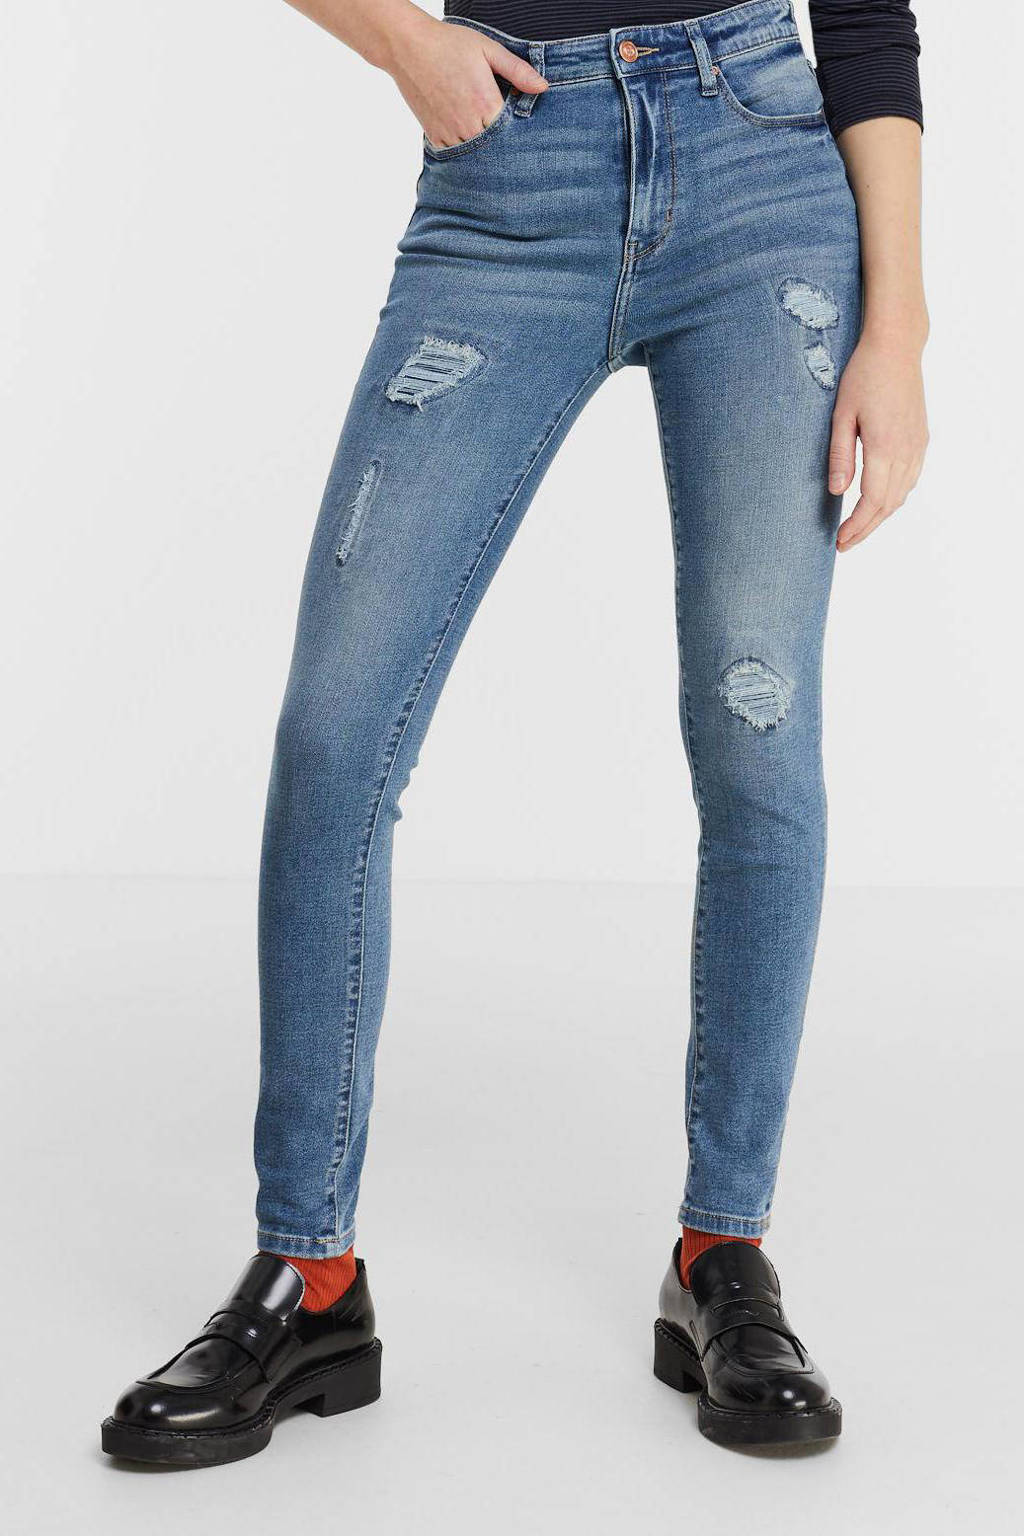 Blauwe dames Raizzed skinny jeans Blossom van stretchdenim met regular waist en rits- en knoopsluiting